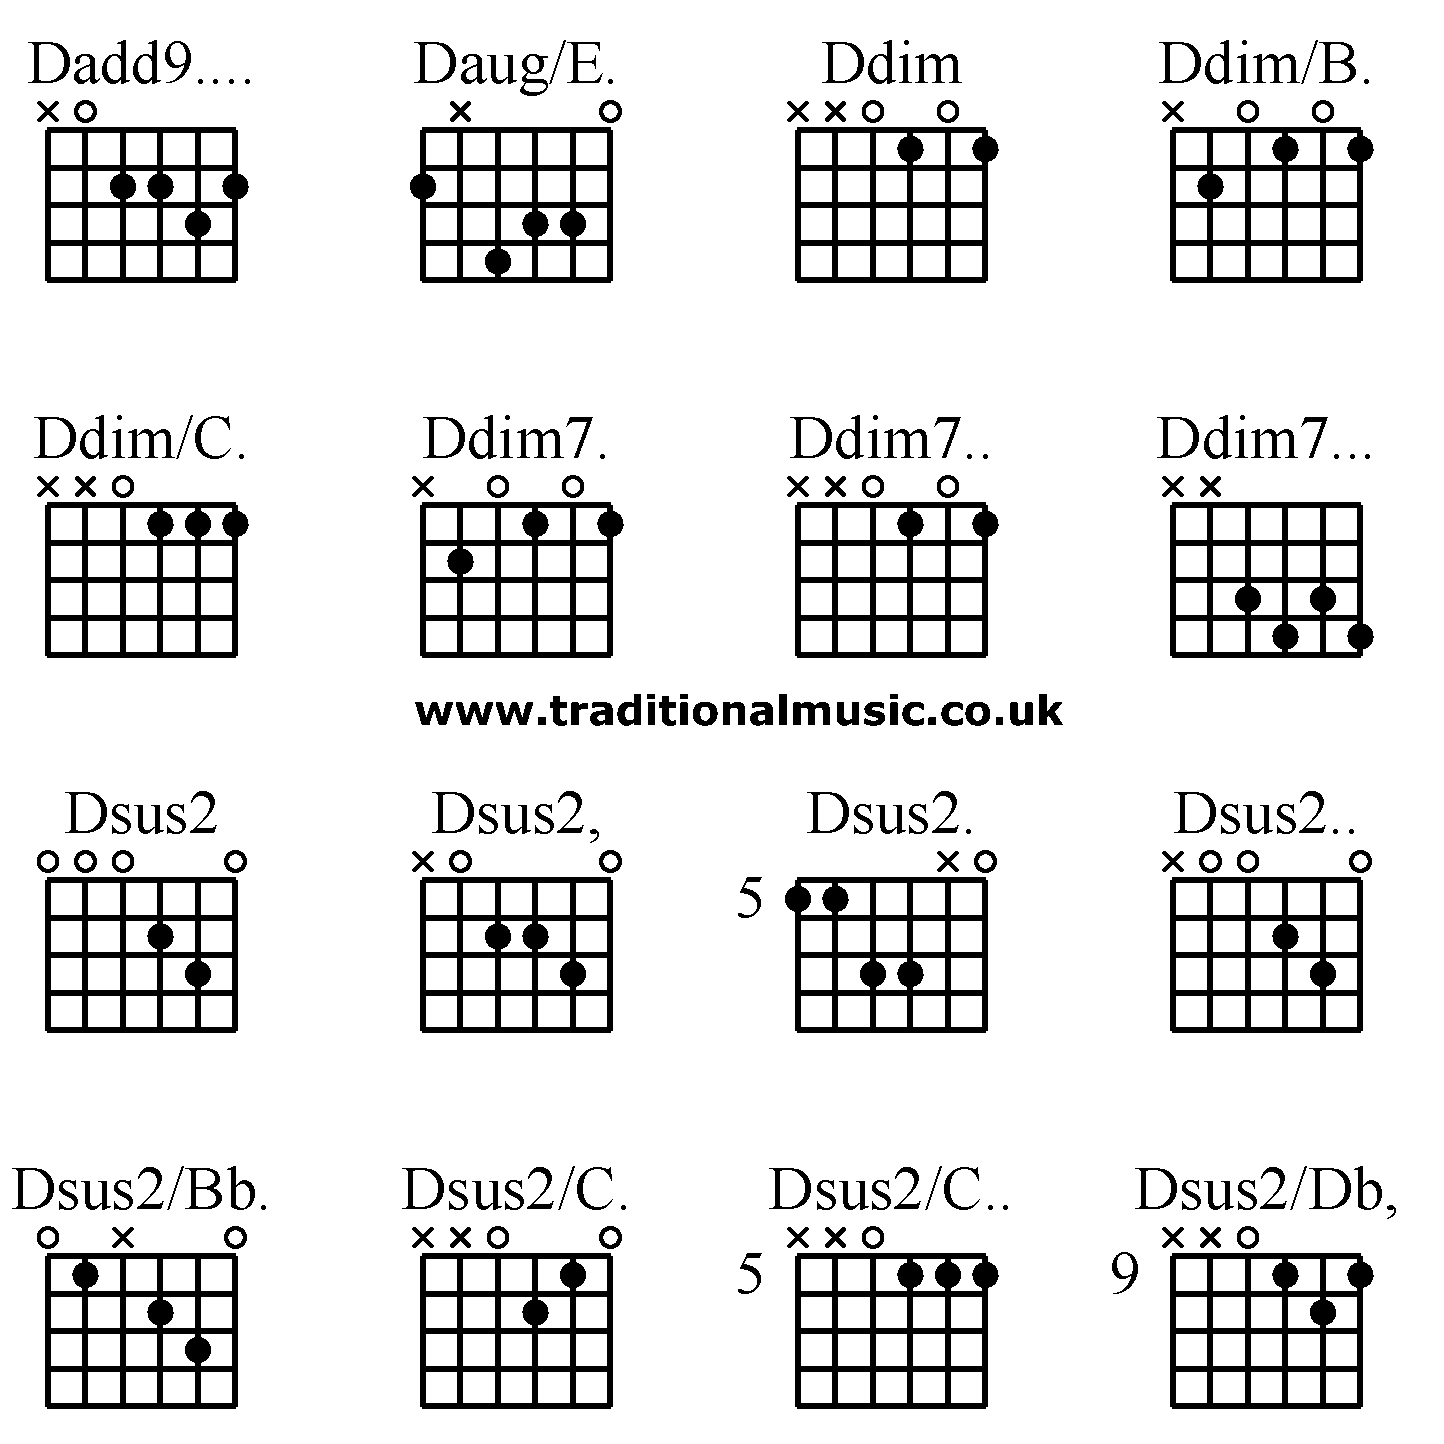 fest Om indstilling Styre Guitar chords advanced - Dadd9. Daug/E. Ddim Ddim/B. Ddim/C. Ddim7. Ddim7.  Ddim7. Dsus2 Dsus2, Dsus2. Dsus2. Dsus2/Bb. Dsus2/C. Dsus2/C. Dsus2/Db,